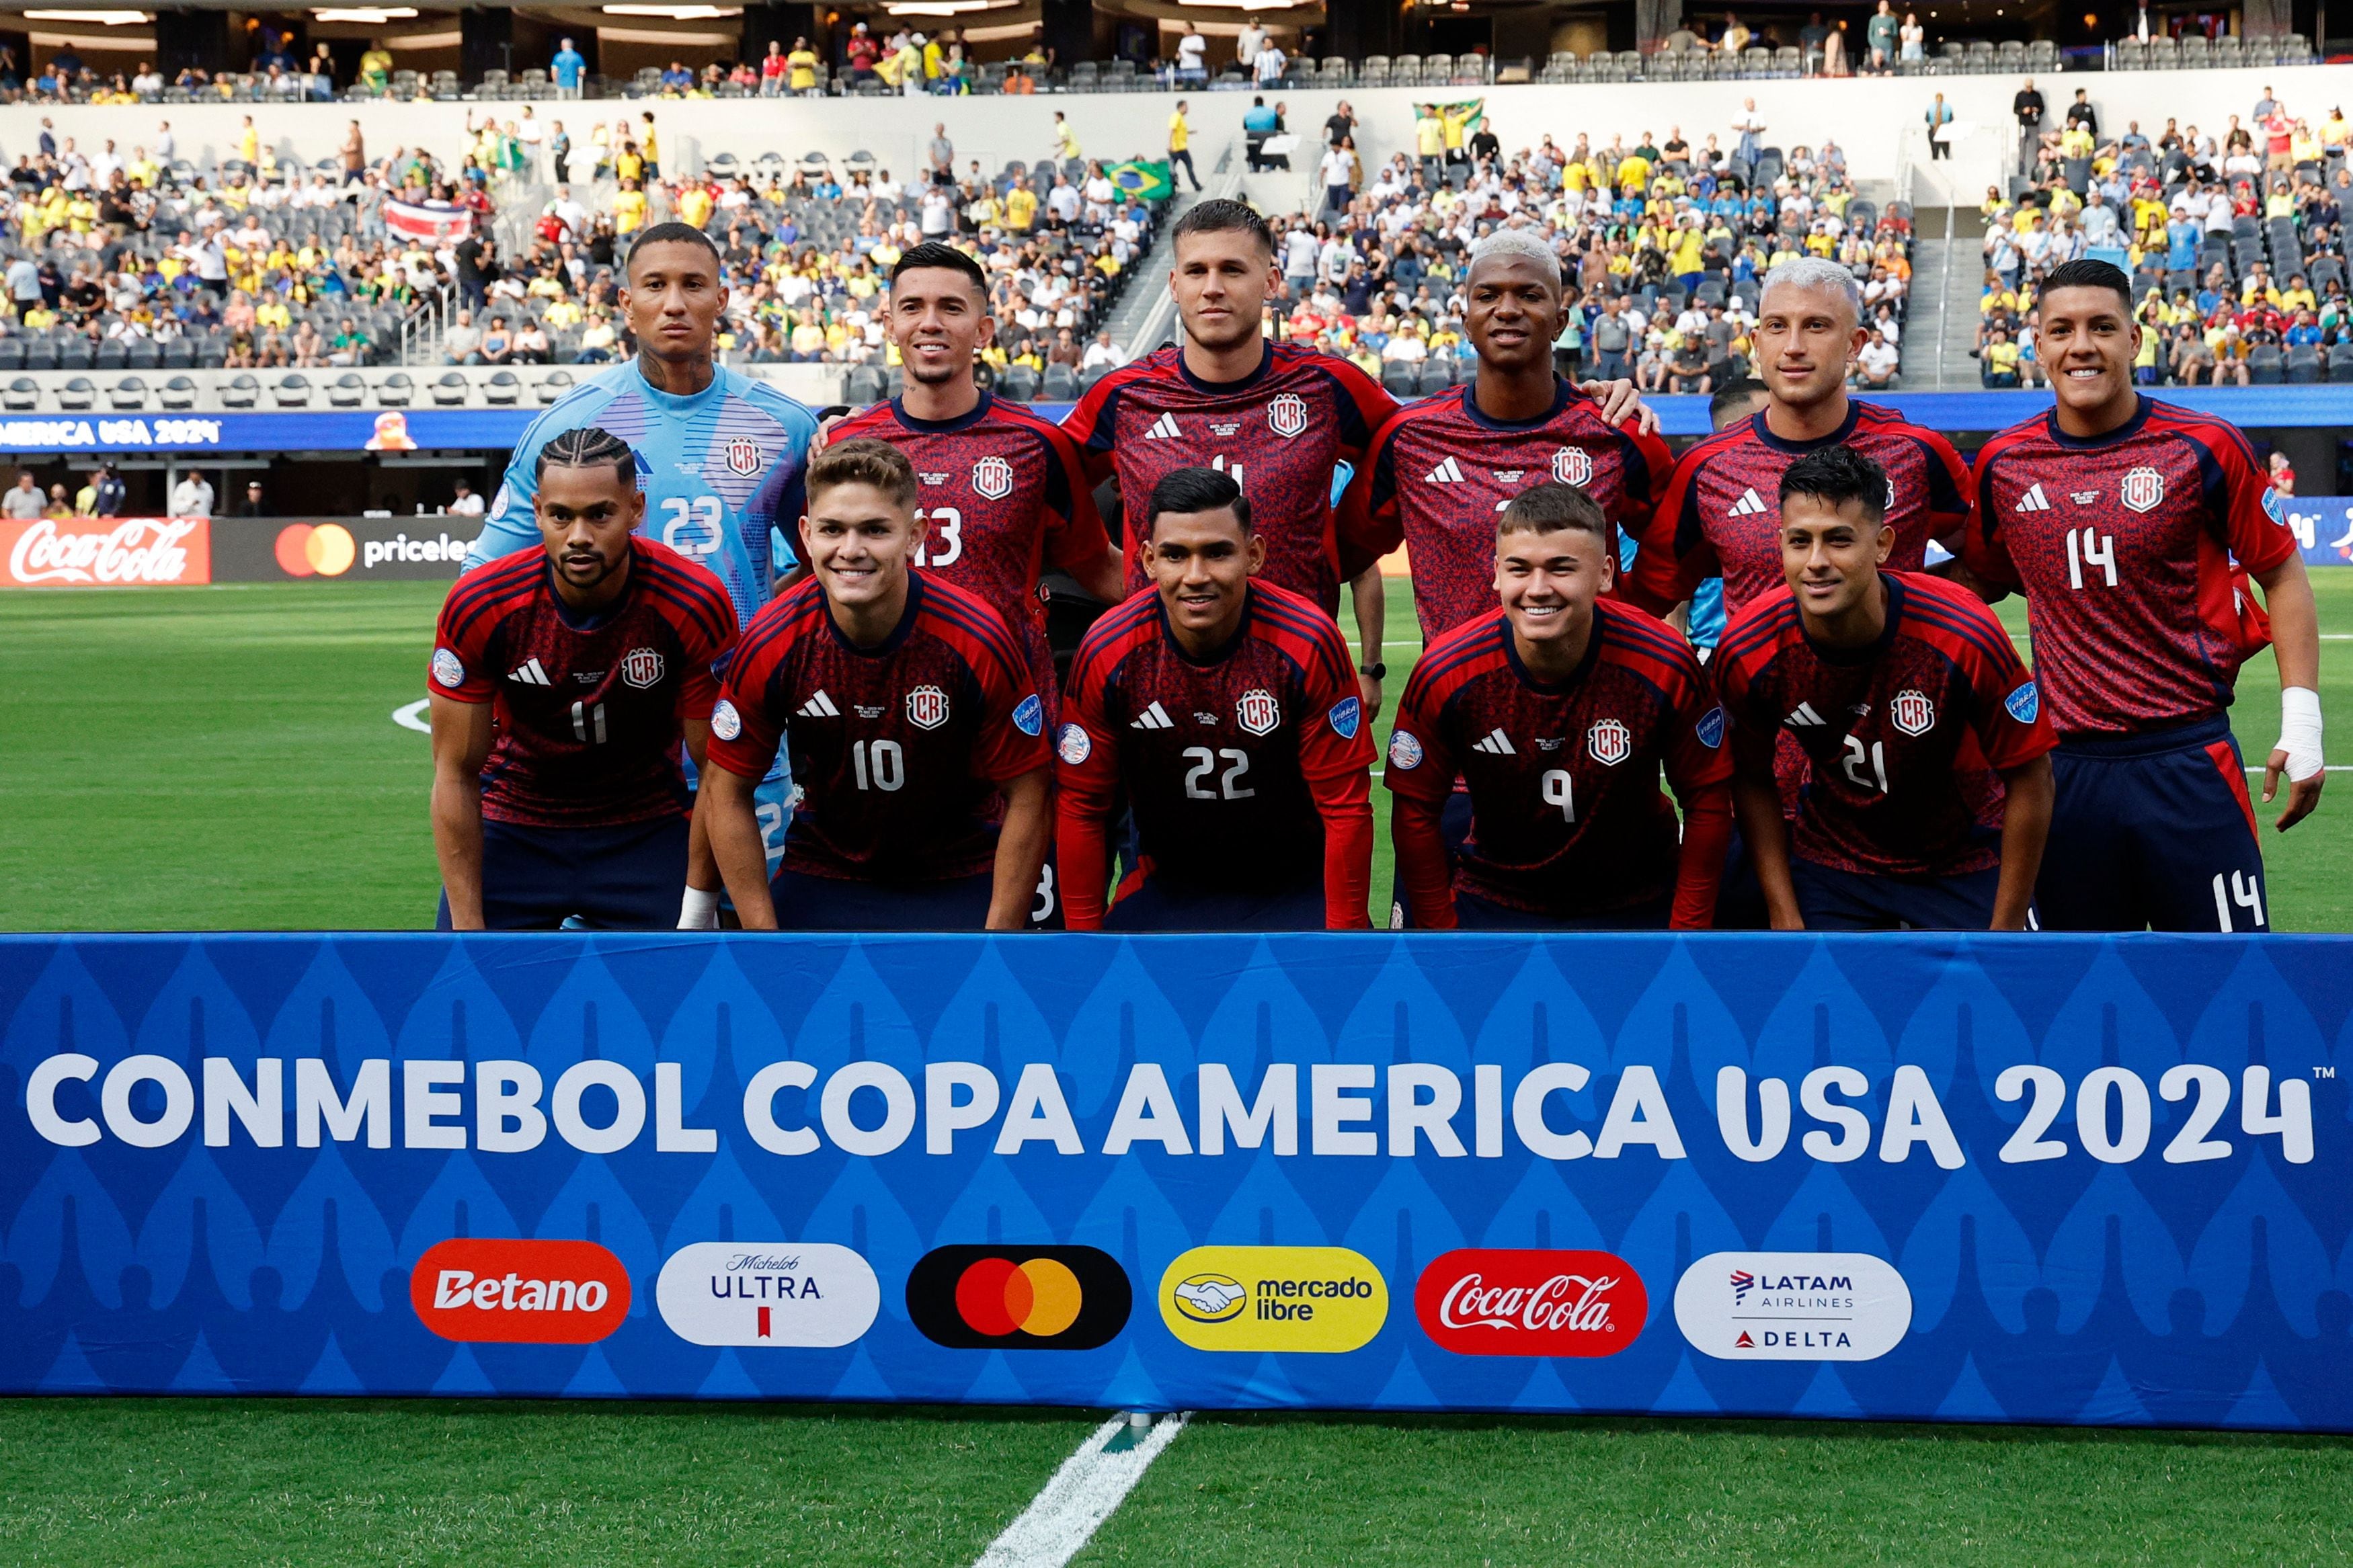 La Selección de Costa Rica tiene el promedio de edad más bajo en toda la Copa América. La media de los ticos es de 24,7, pero aún así su debut frente a Brasil fue bueno. 